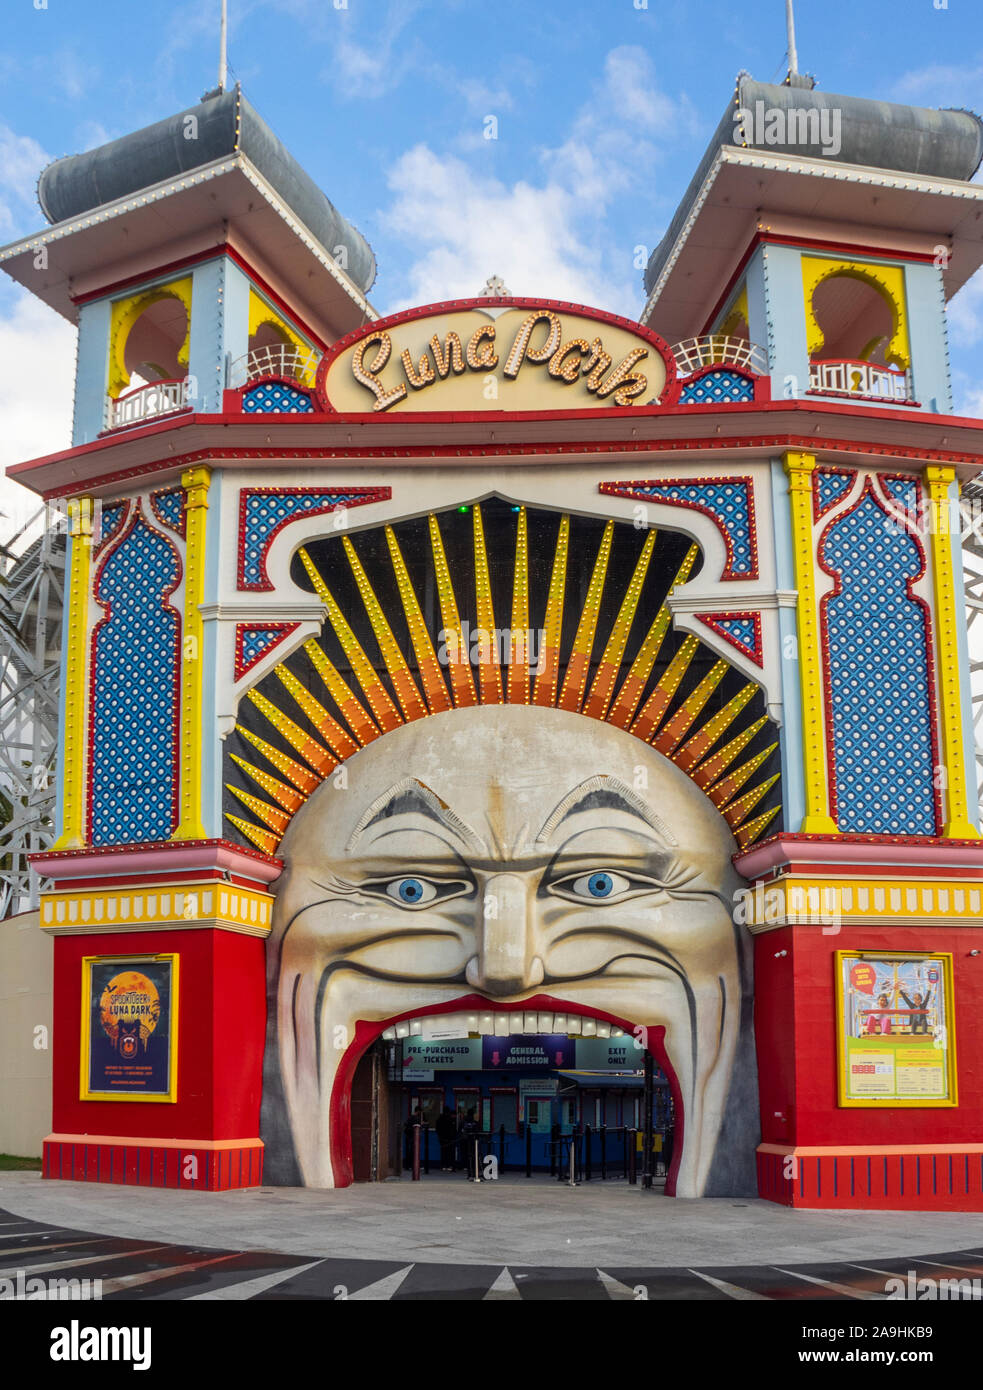 Señor icónica Cara de luna entrada al parque de atracciones Luna Park, recinto ferial de St Kilda Melbourne, Victoria, Australia. Foto de stock